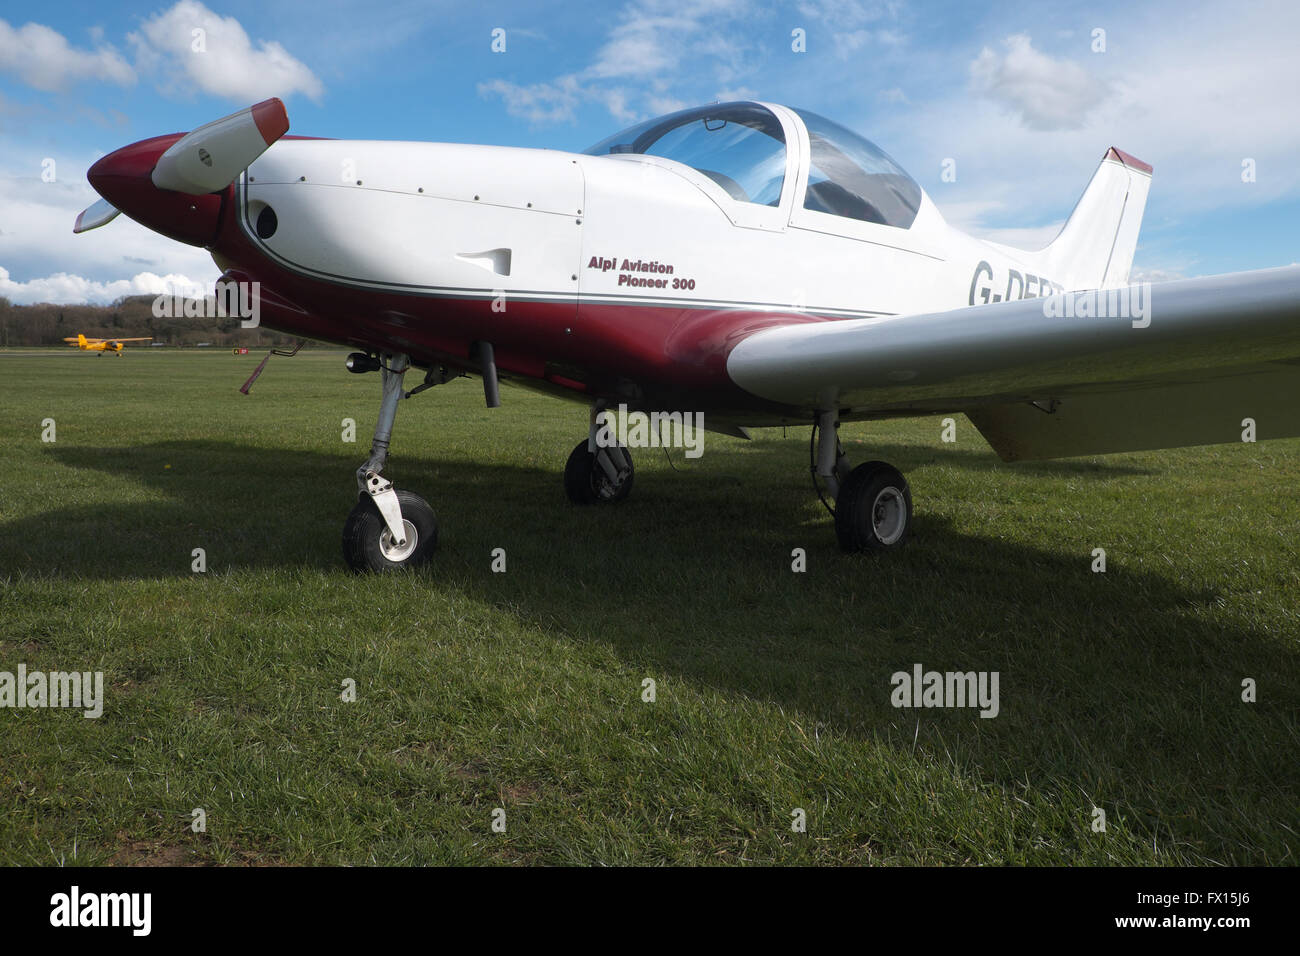 Alpi Aviation Pioneer 300 aeromobili leggeri in un campo di aviazione di erba nel Regno Unito Foto Stock